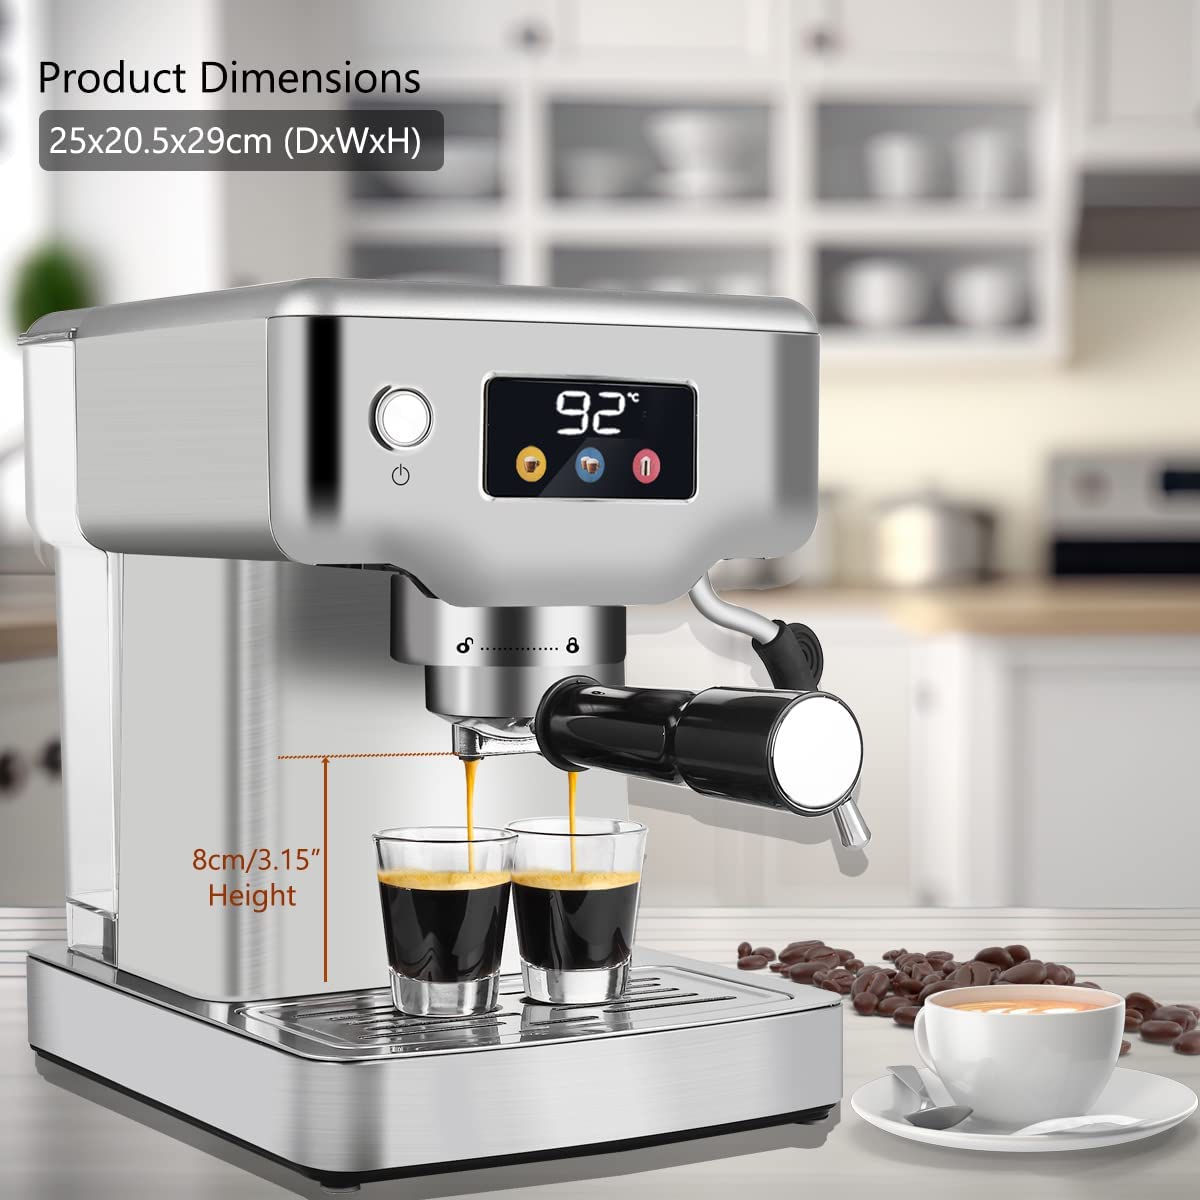 Espresso Machine with Milk Frother, Kitchen Espresso Coffee Maker